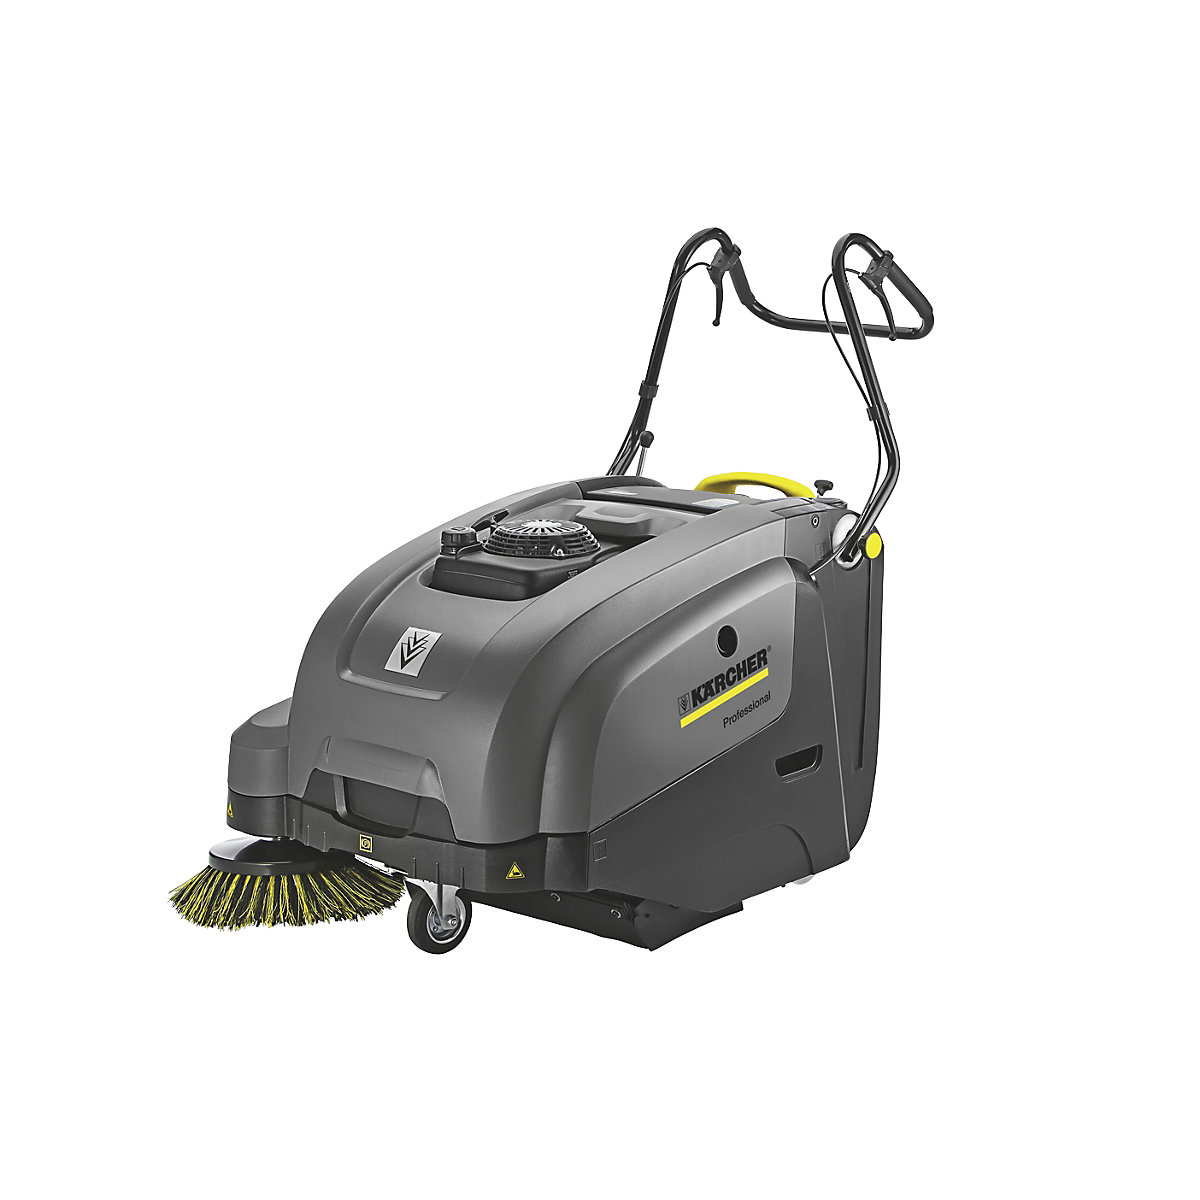 Walk-behind vacuum sweeper – Kärcher